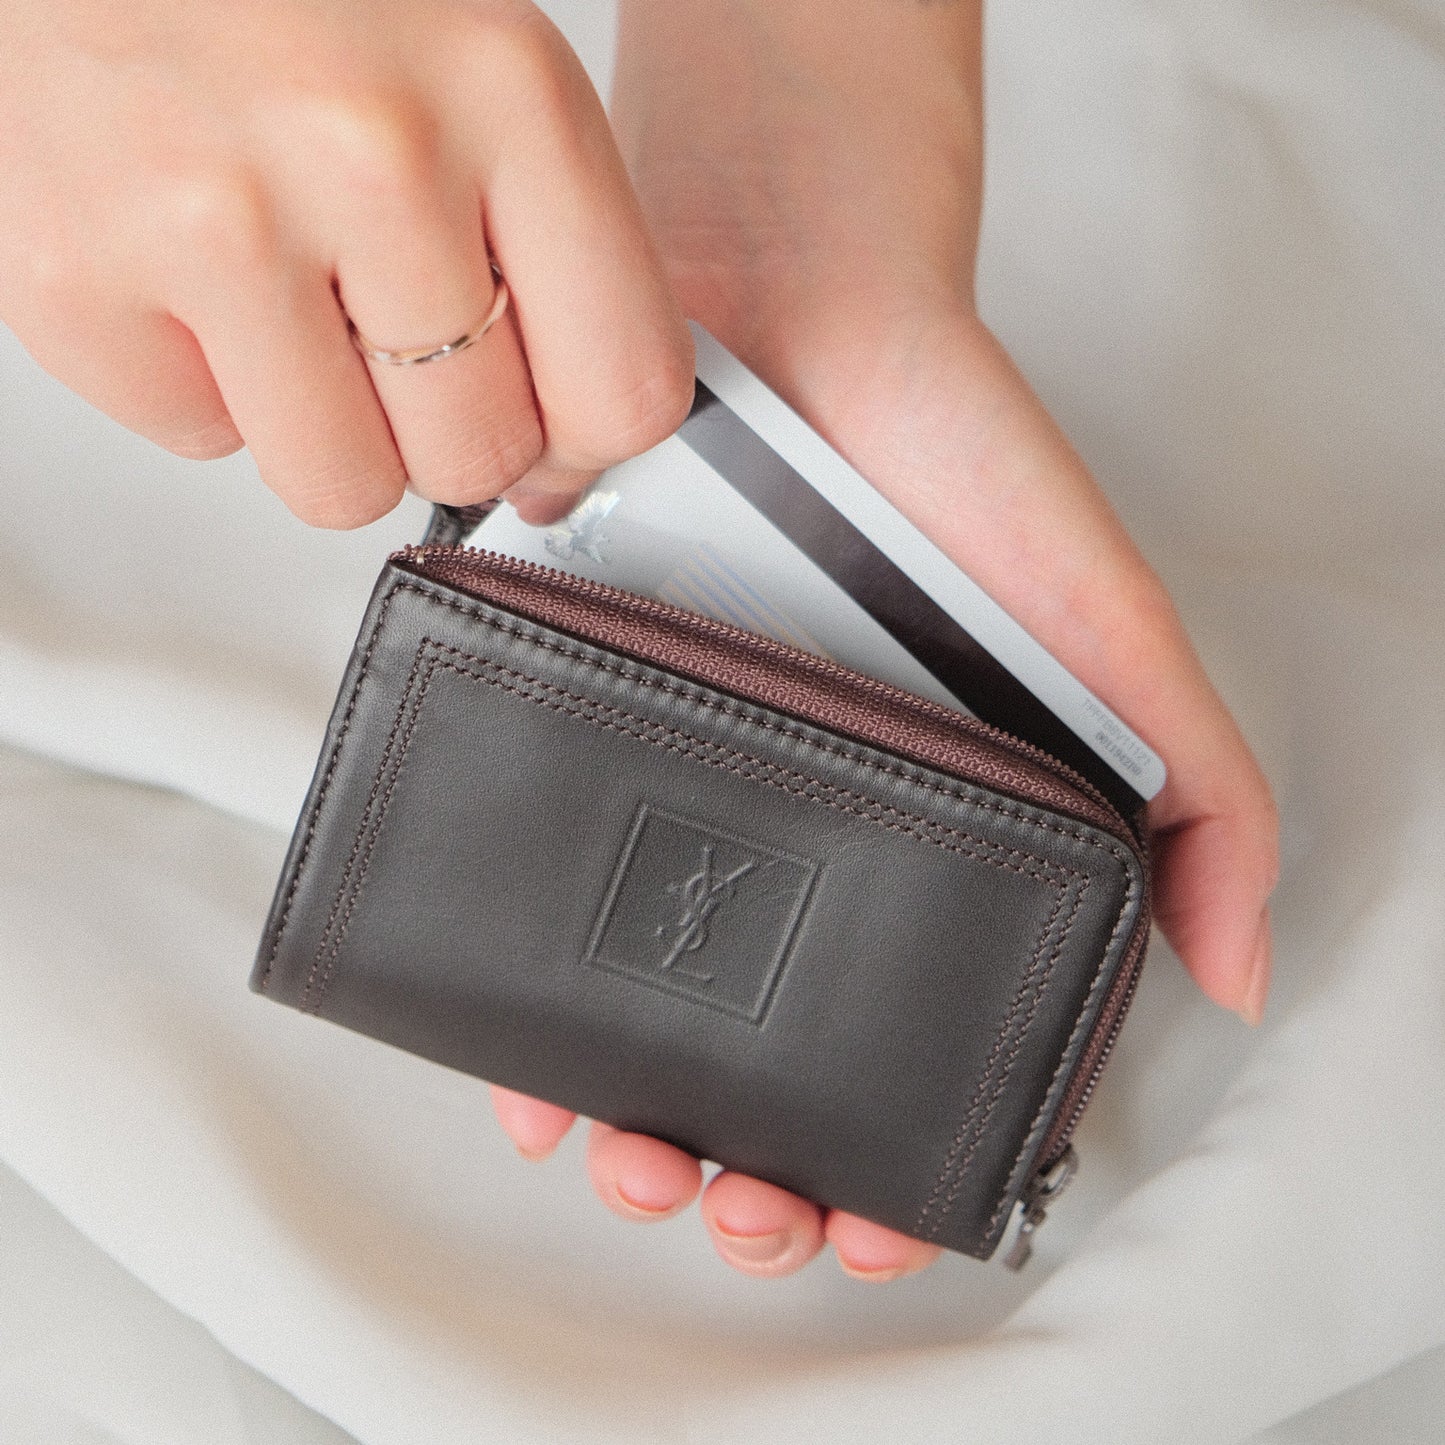 YSL Saint Laurent Leather Compact Zip Around Wallet